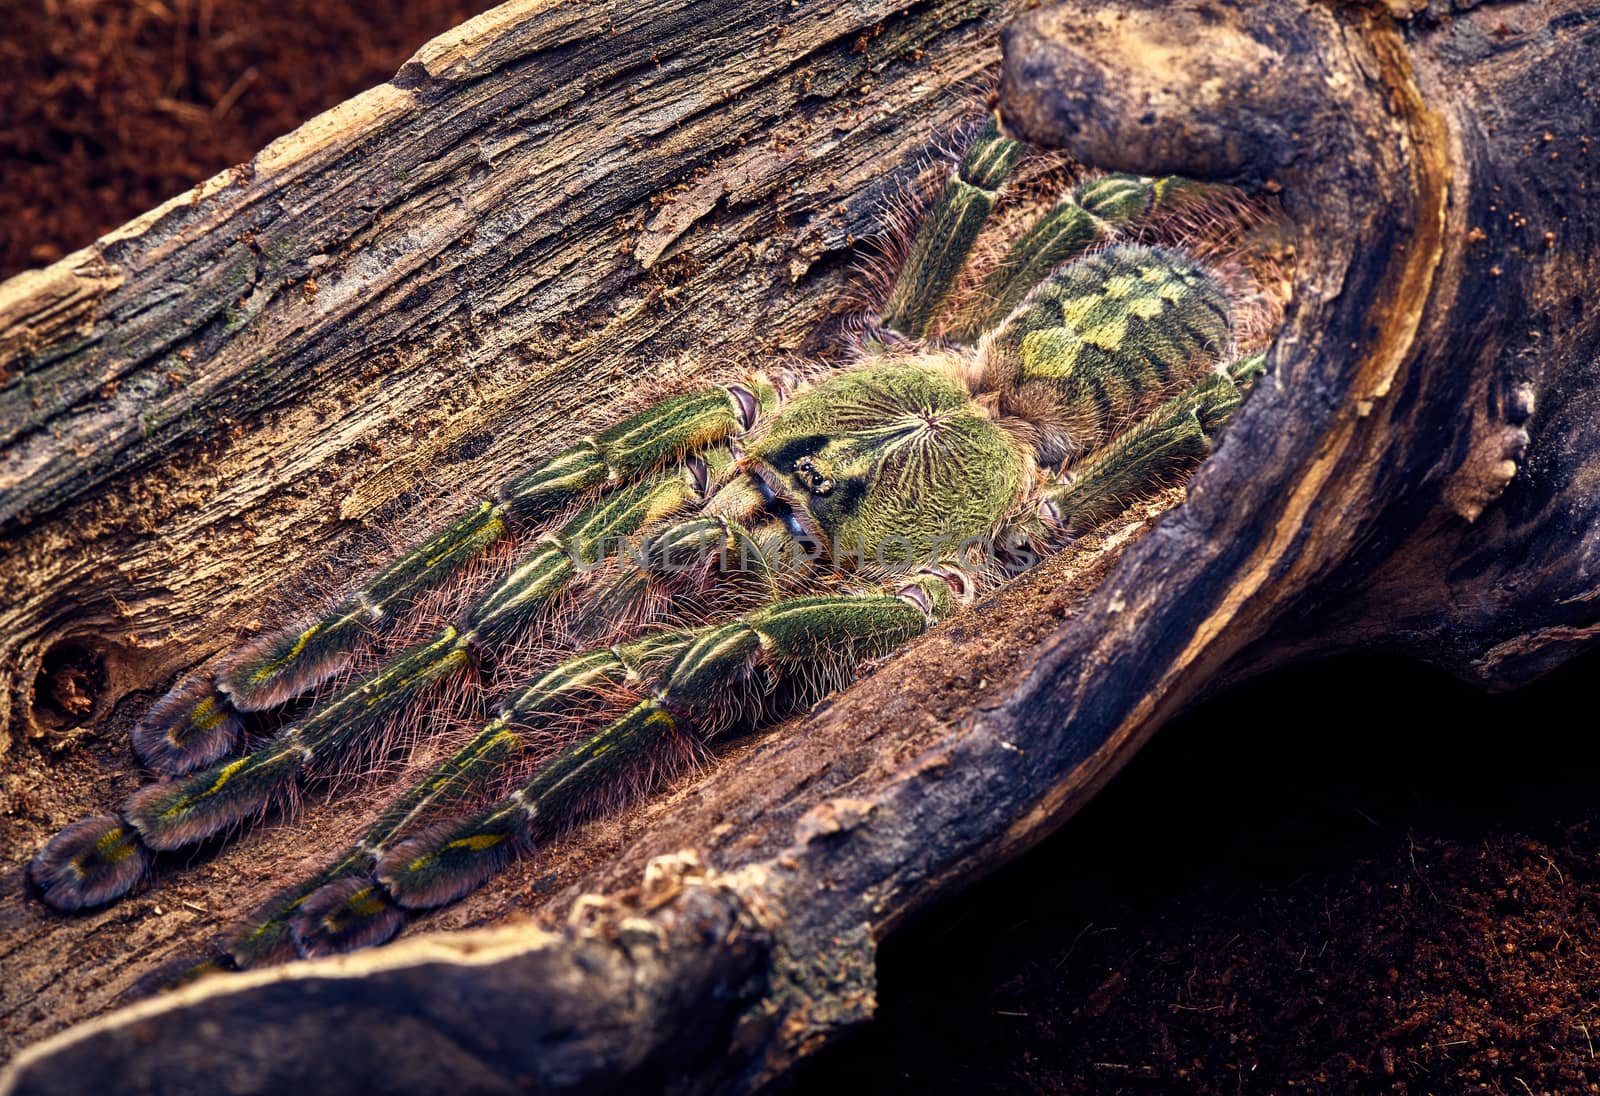 tarantula Poecilotheria rufilata by master1305